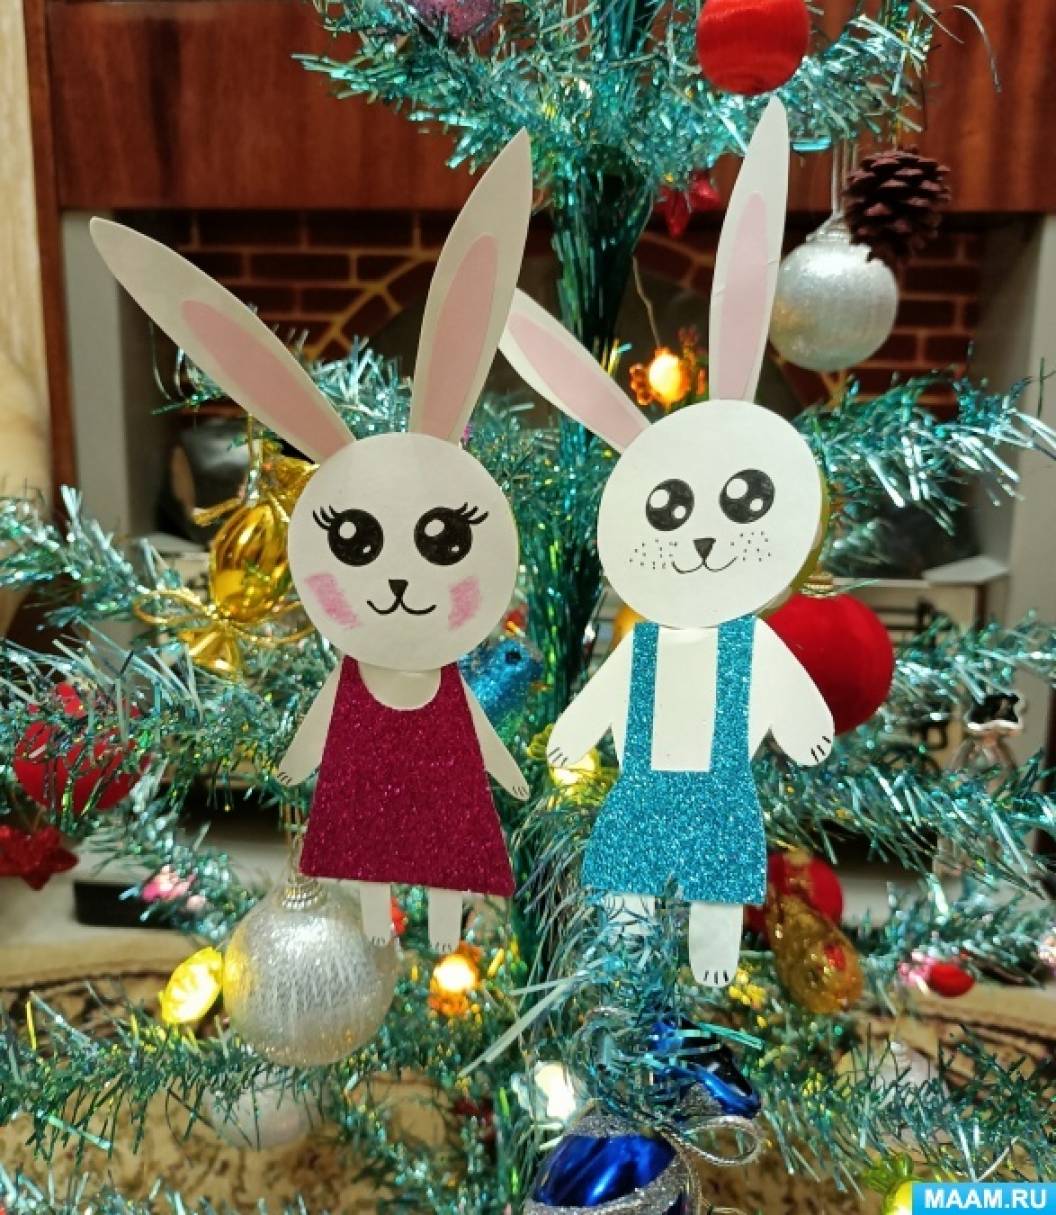 Мастер-класс по изготовлению новогодних игрушек из бумажных стаканчиков с элементами рисования и аппликации «Кролики»